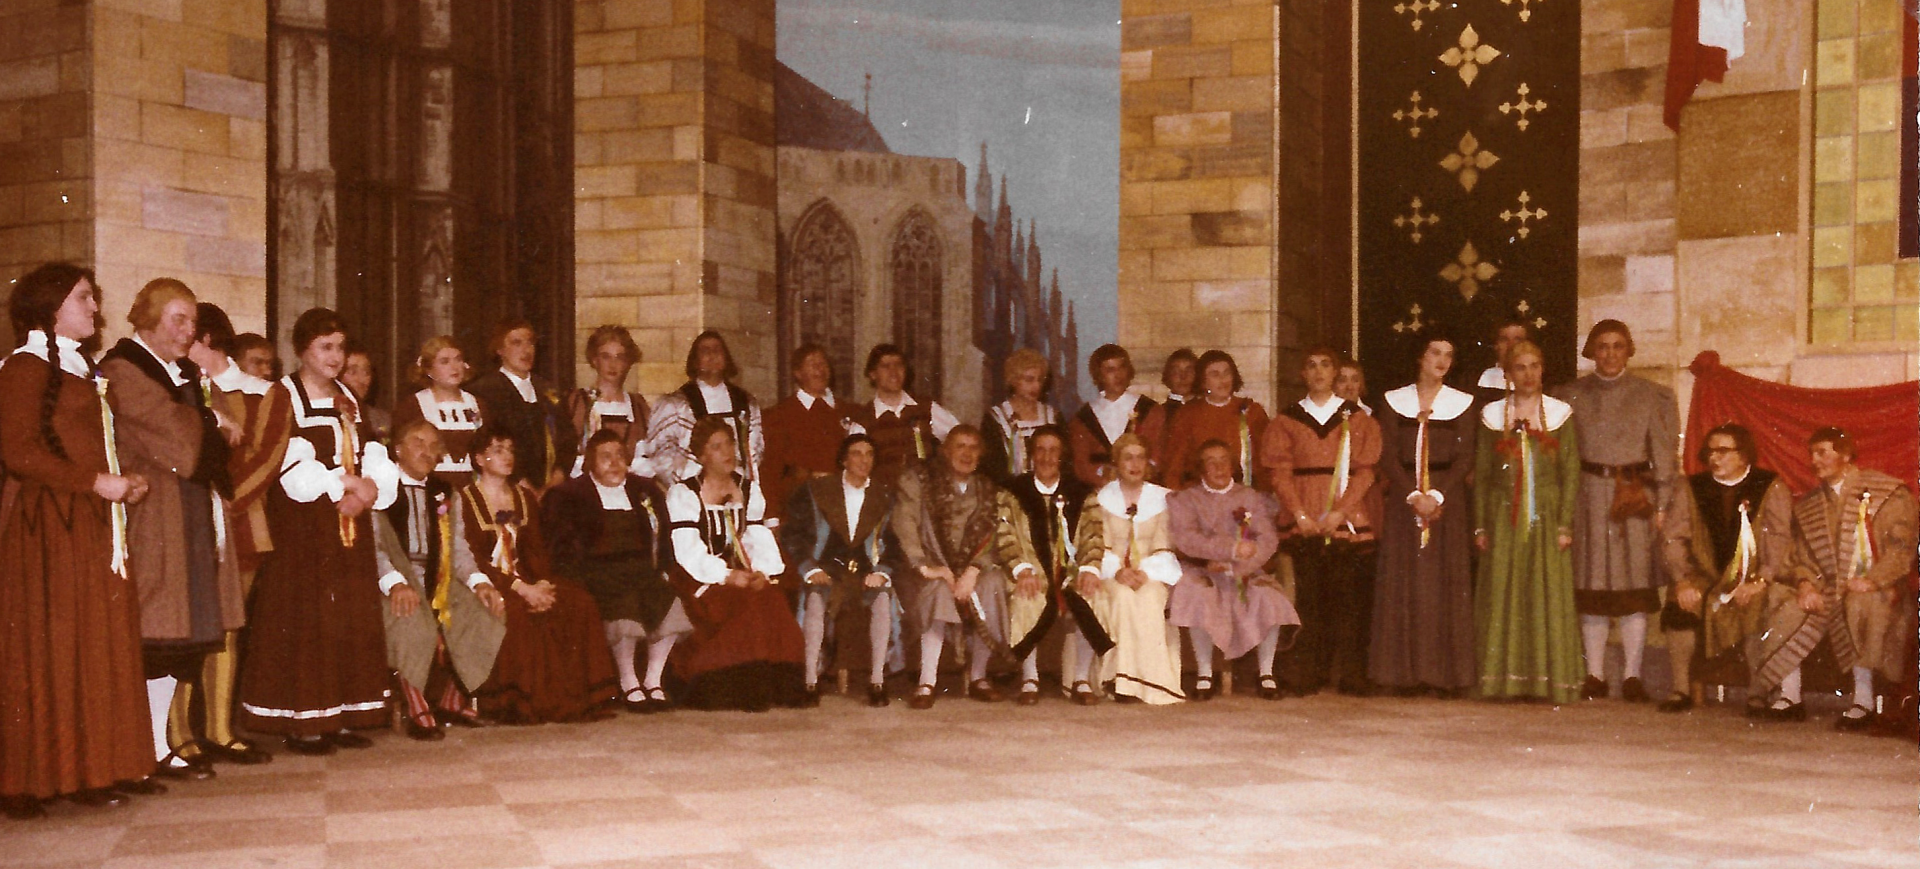 Kölsch Jeld oder De Krun vun England - Divertissementchen 1964 - Großer Chor vor imposantem Bühnenbild